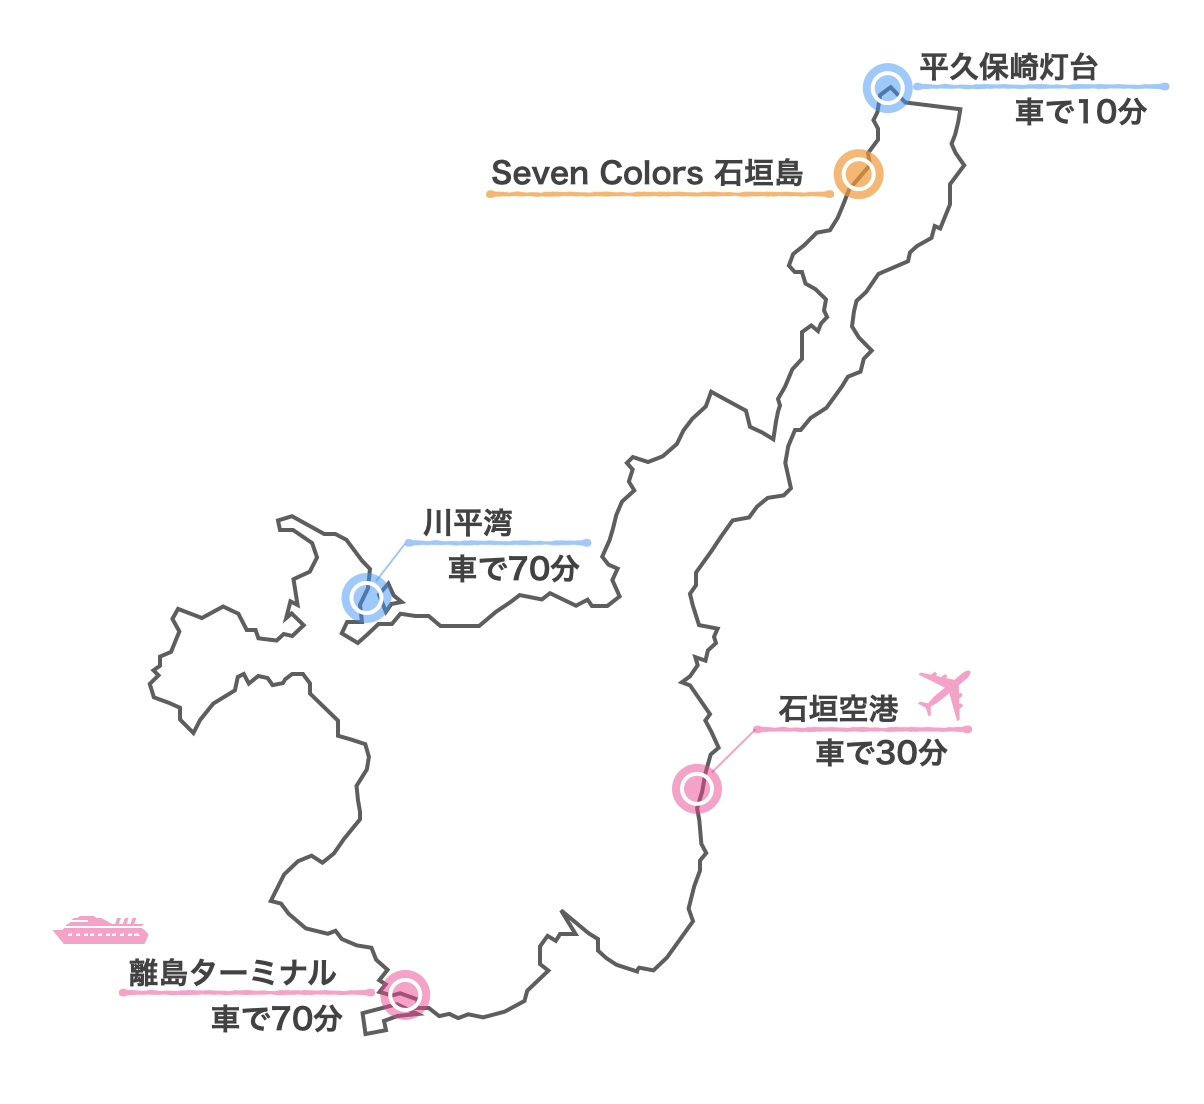 Seven Colors 石垣島 地図